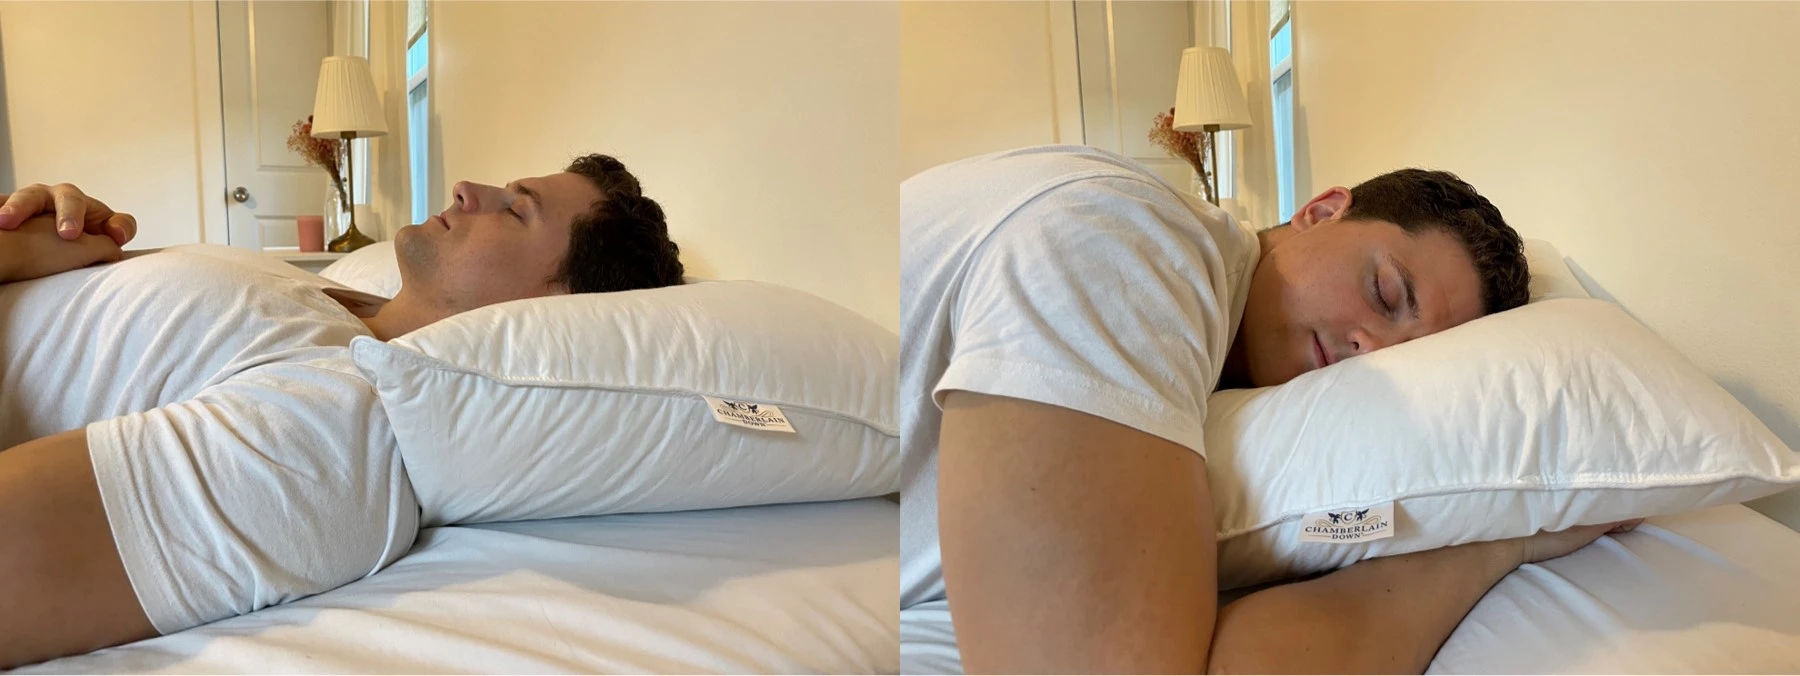 https://pillowspecialist.com/img/chamberlain-down-pillow-sleeping.webp